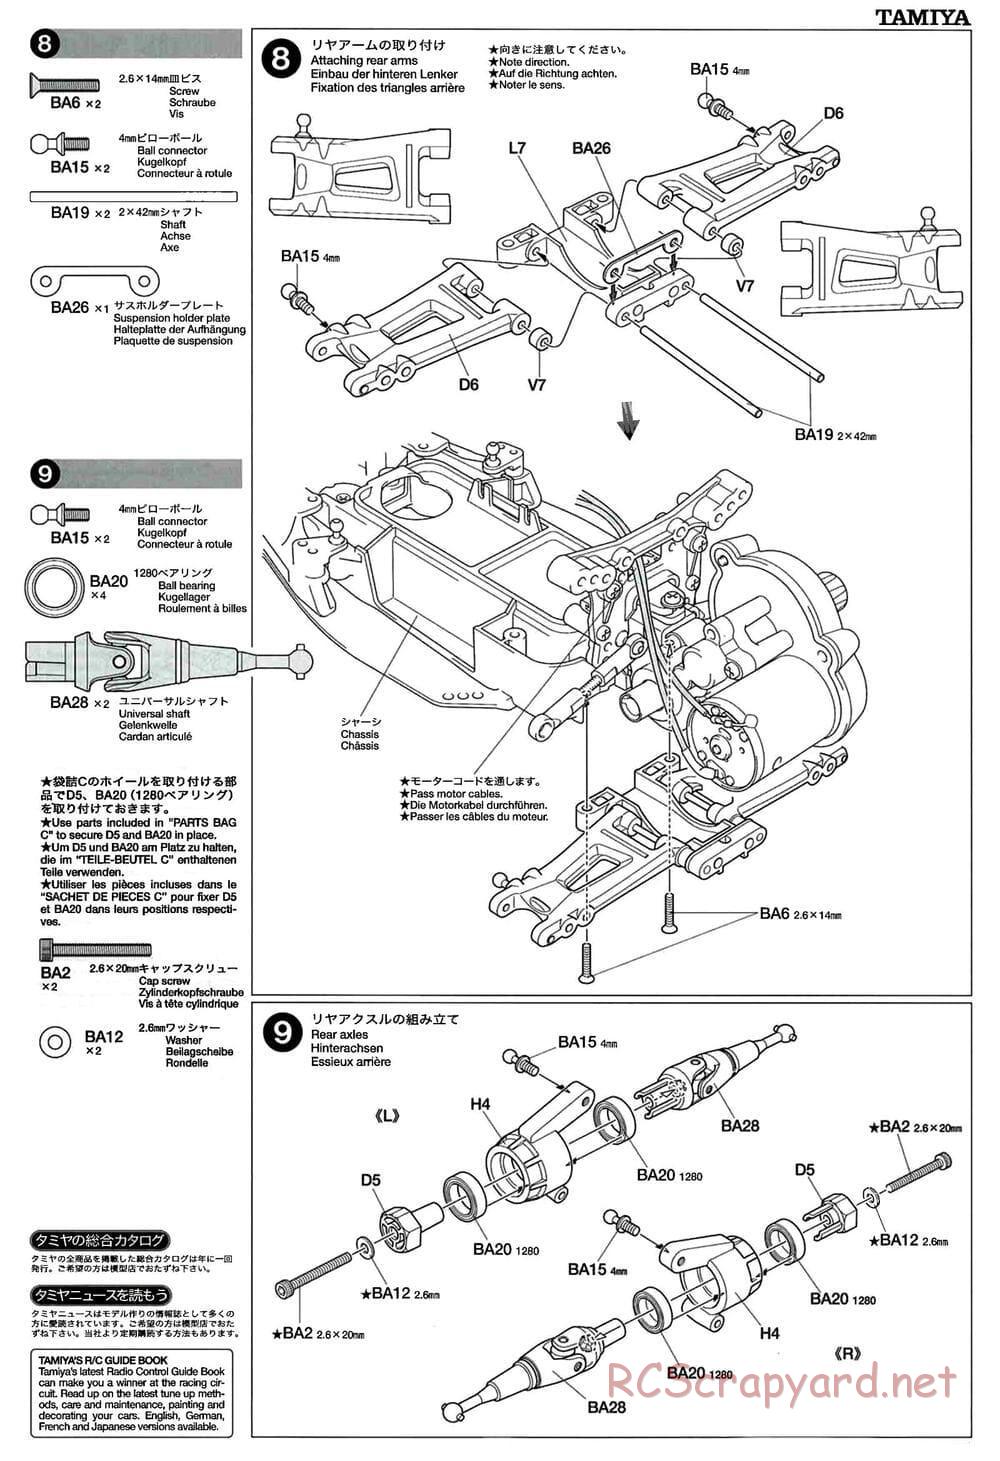 Tamiya - GT-01 Chassis - Manual - Page 7